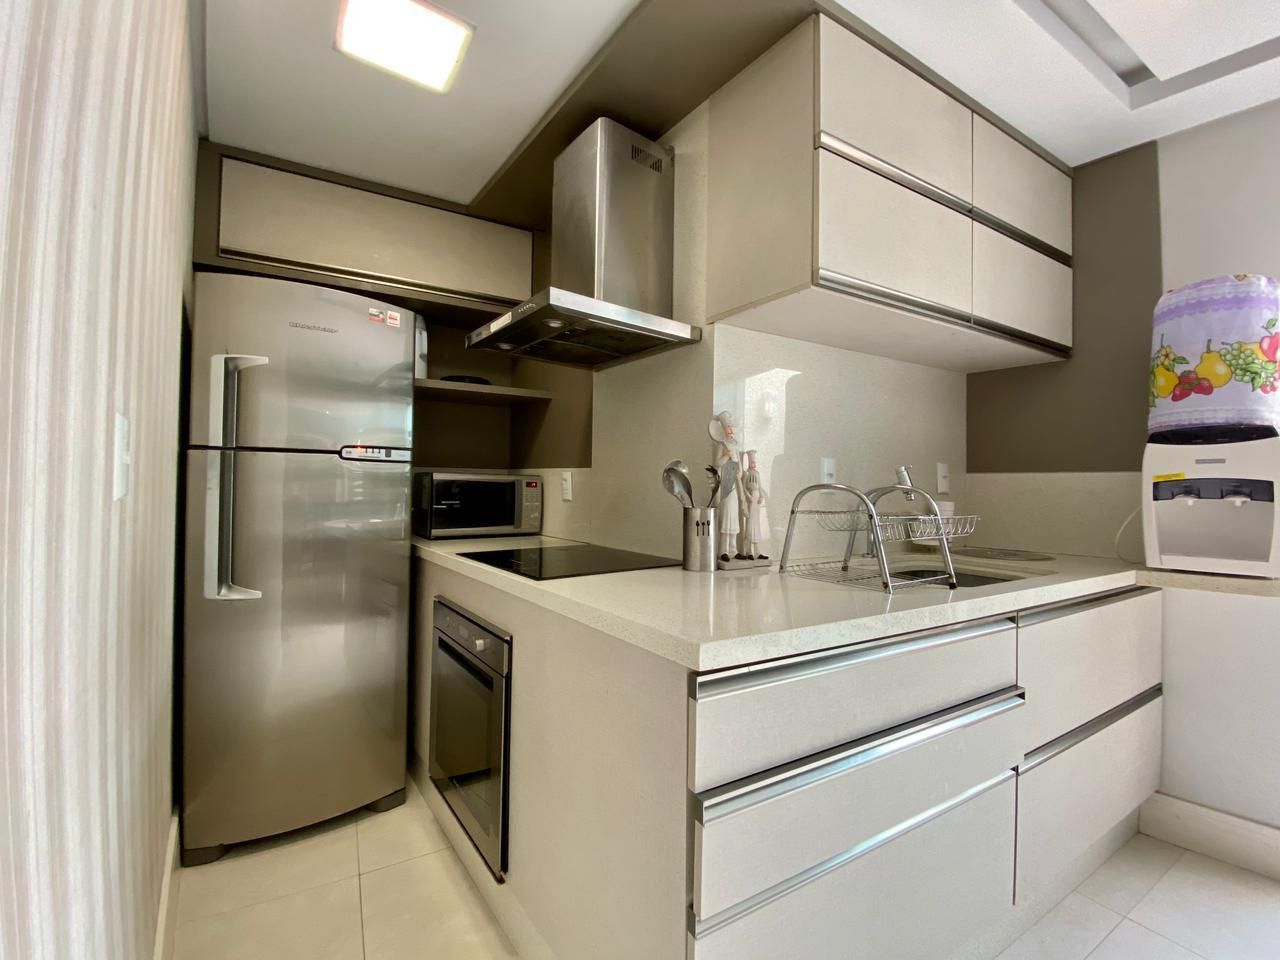 Apartamento com 3 Dormitórios para alugar, 95 m² por R$ 280,00